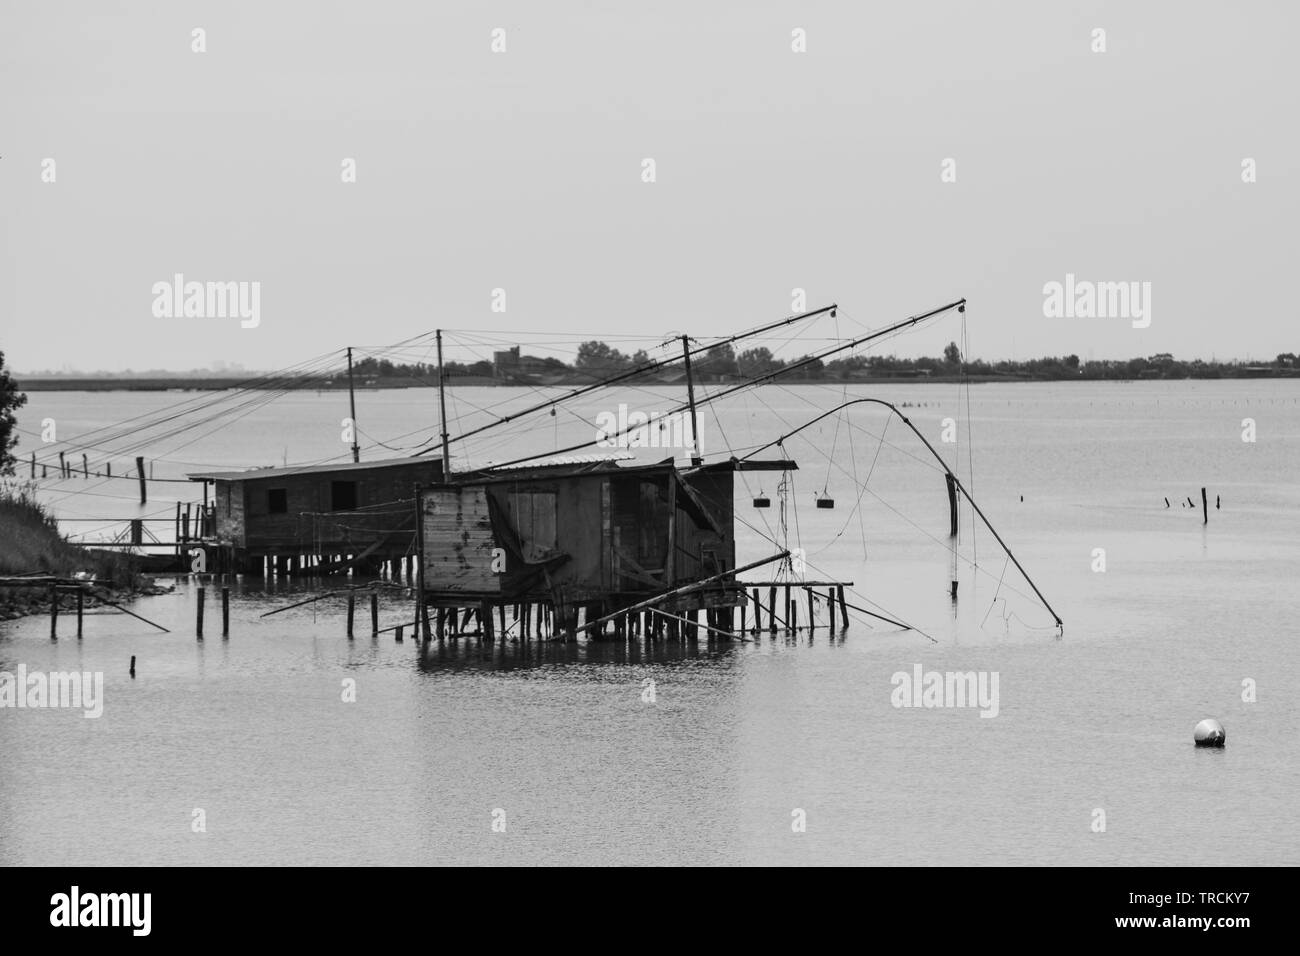 Maisons de pêcheurs sur la rivière, la zone du Delta du Pô, Comacchio, Emilia-Romagna, Italie. Juin 2019 Banque D'Images